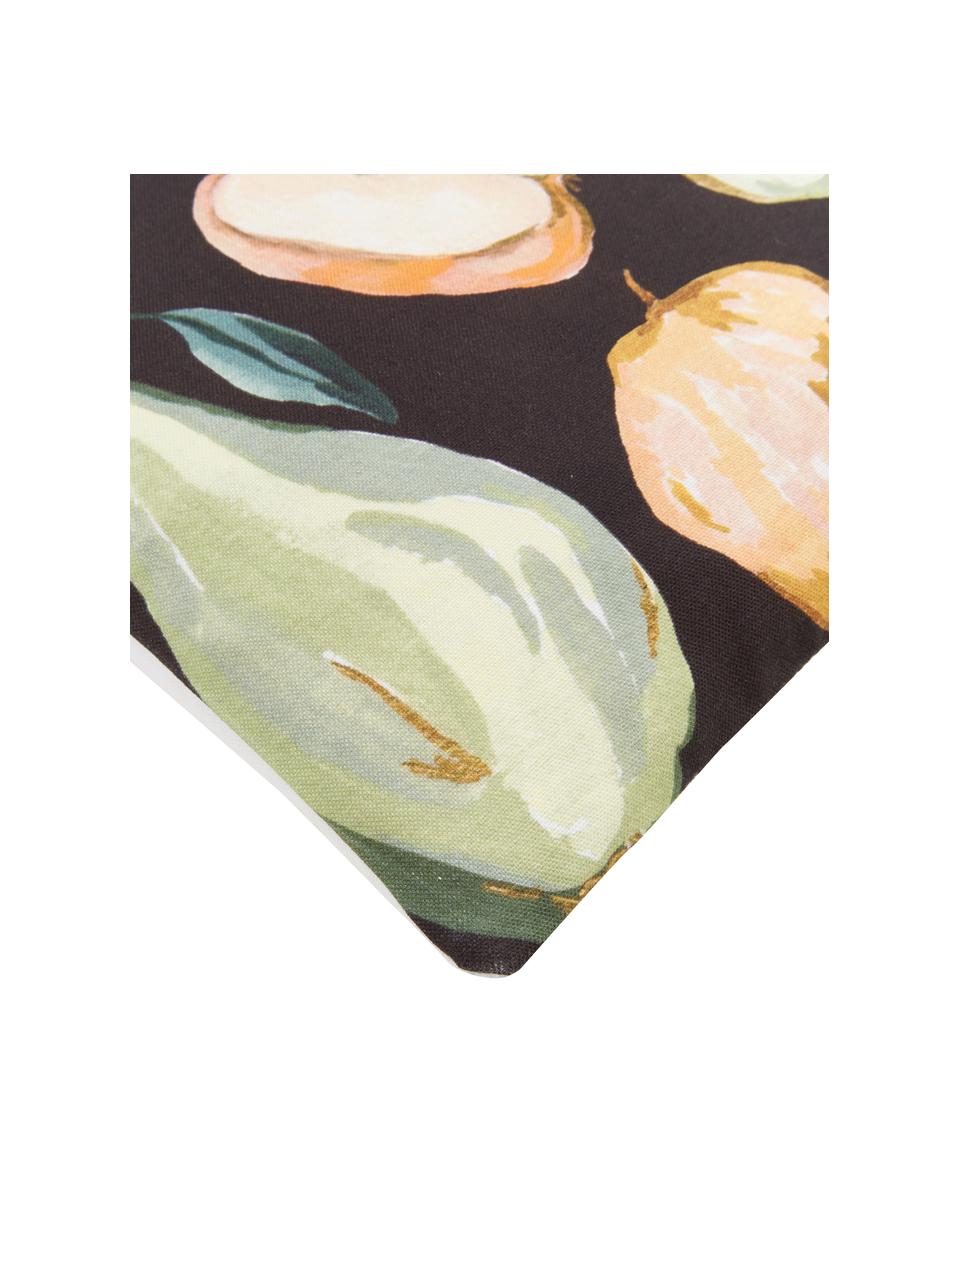 Poszewka na poduszkę Fruits od Candice Gray, 100% bawełna z certyfikatem GOTS, Wielobarwny, S 45 x D 45 cm